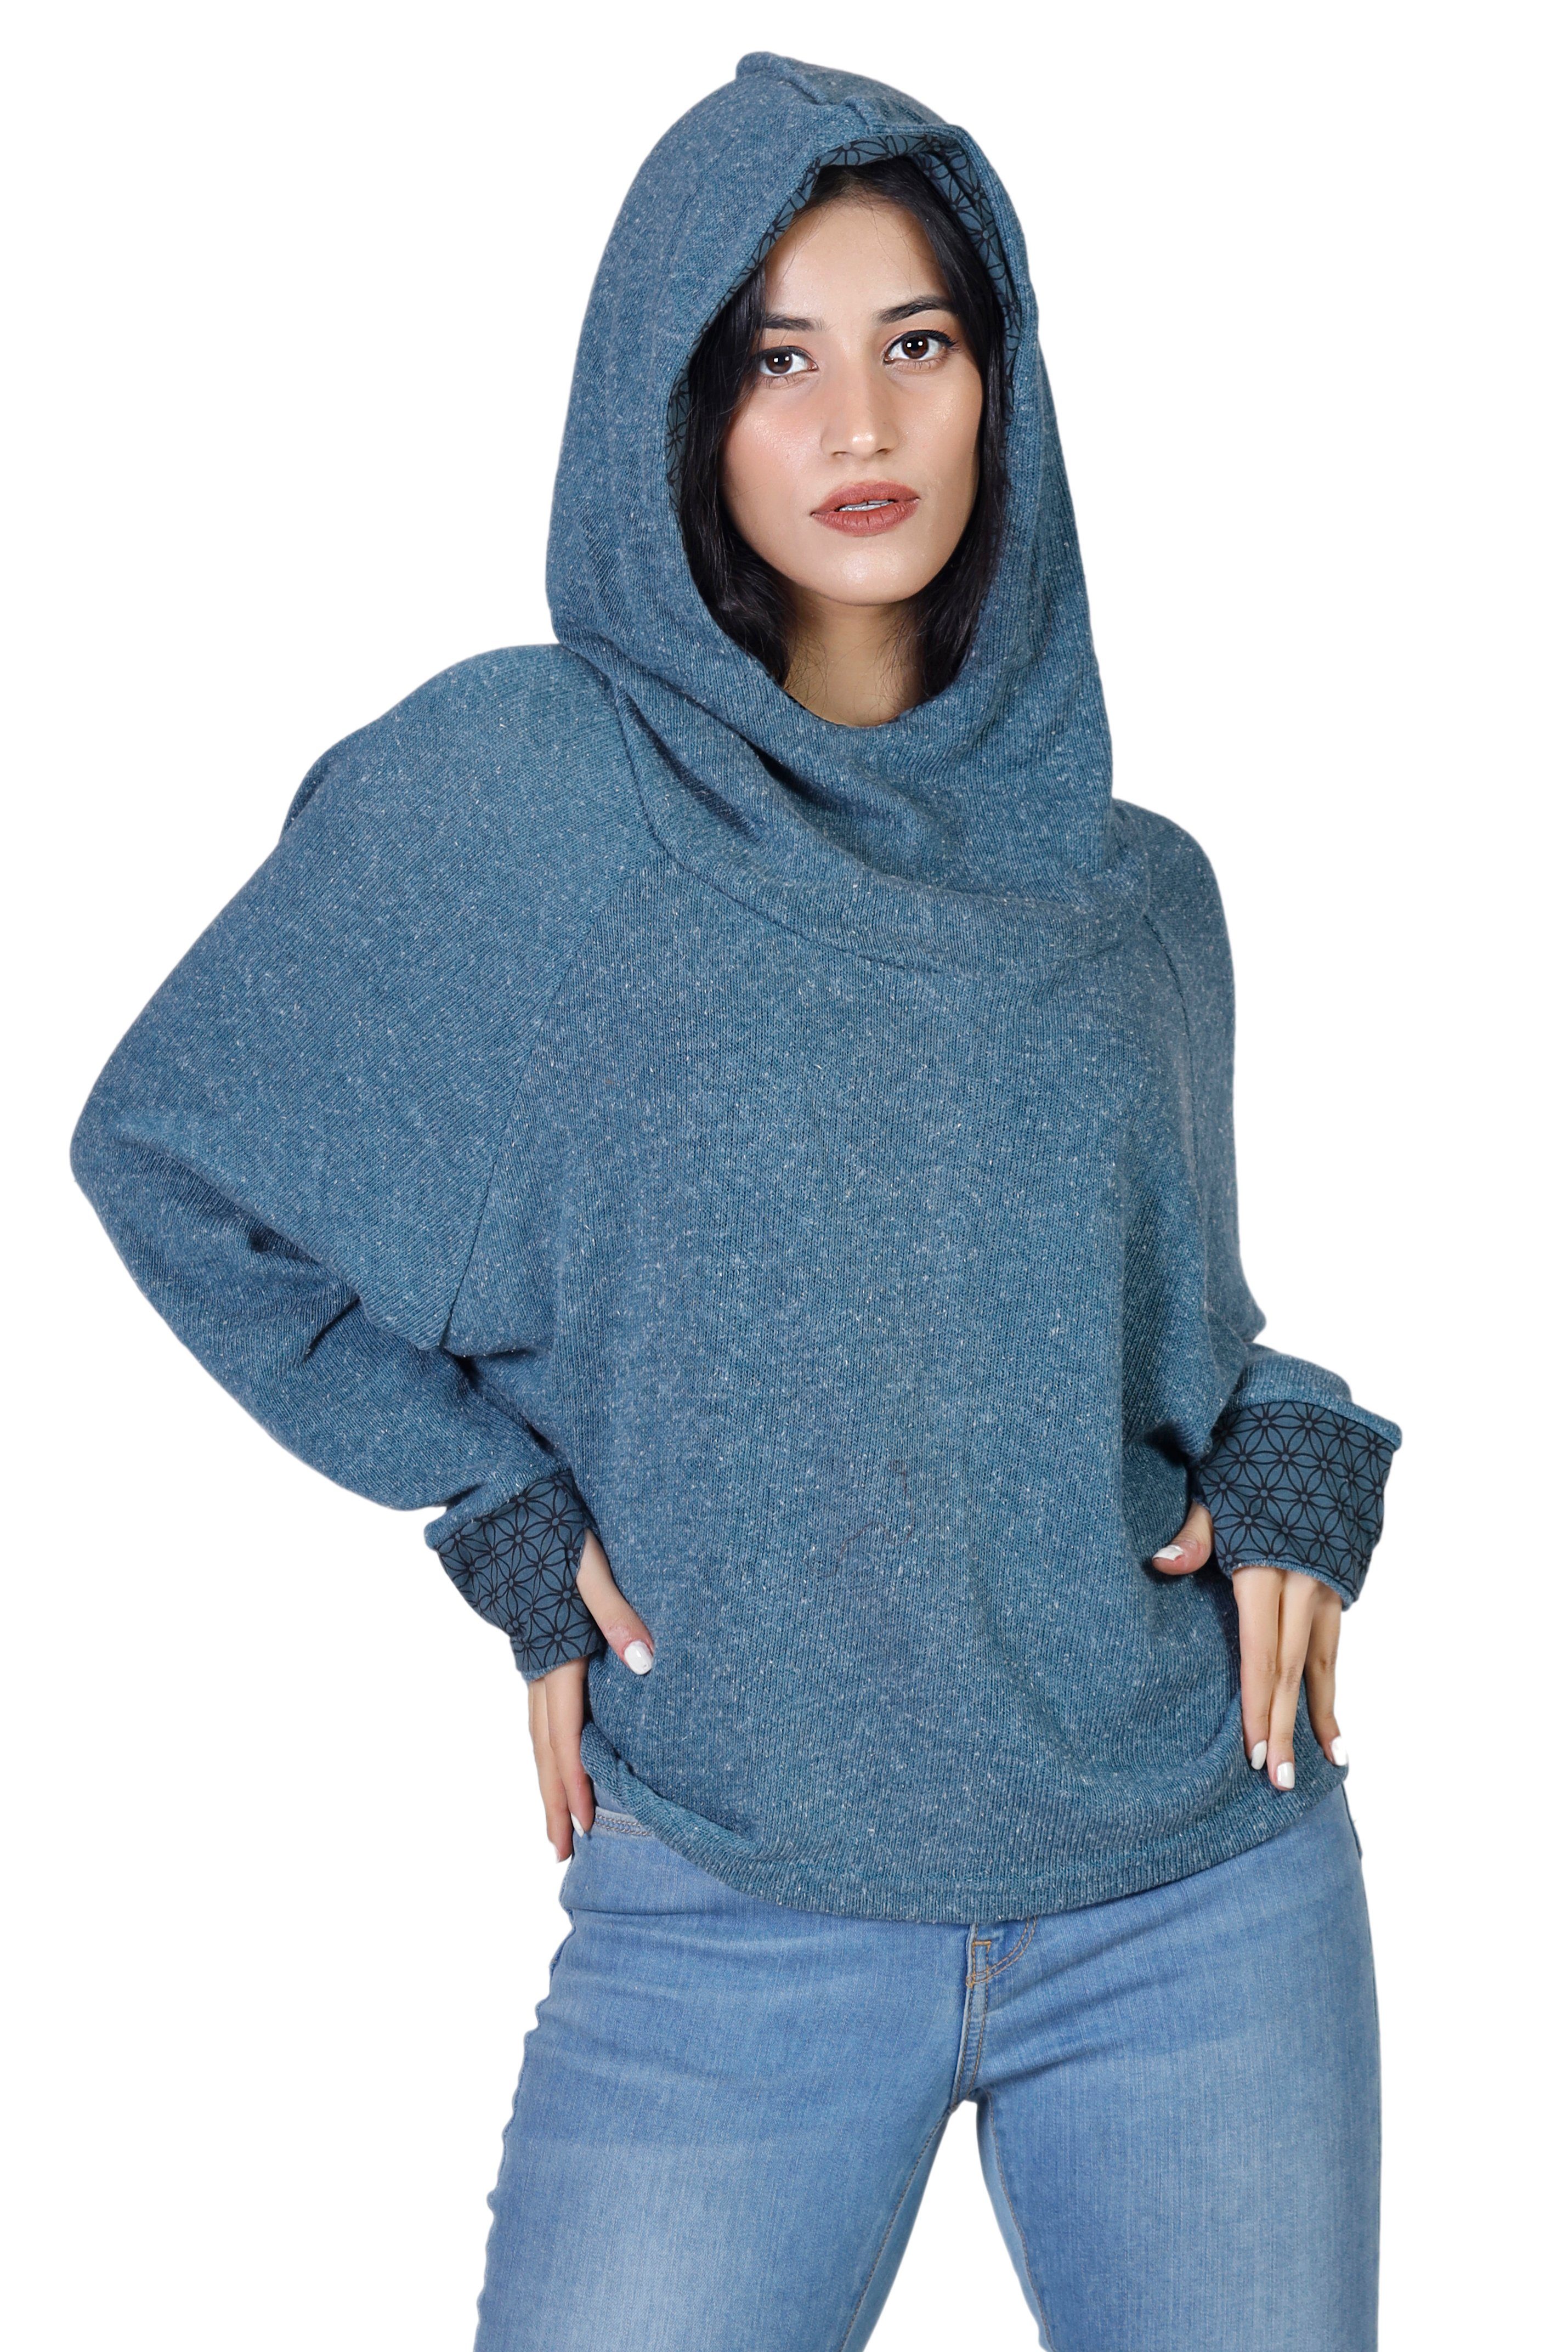 Longsleeve taubenblau -.. Hoody, alternative Bekleidung Sweatshirt, Pullover, Kapuzenpullover Guru-Shop